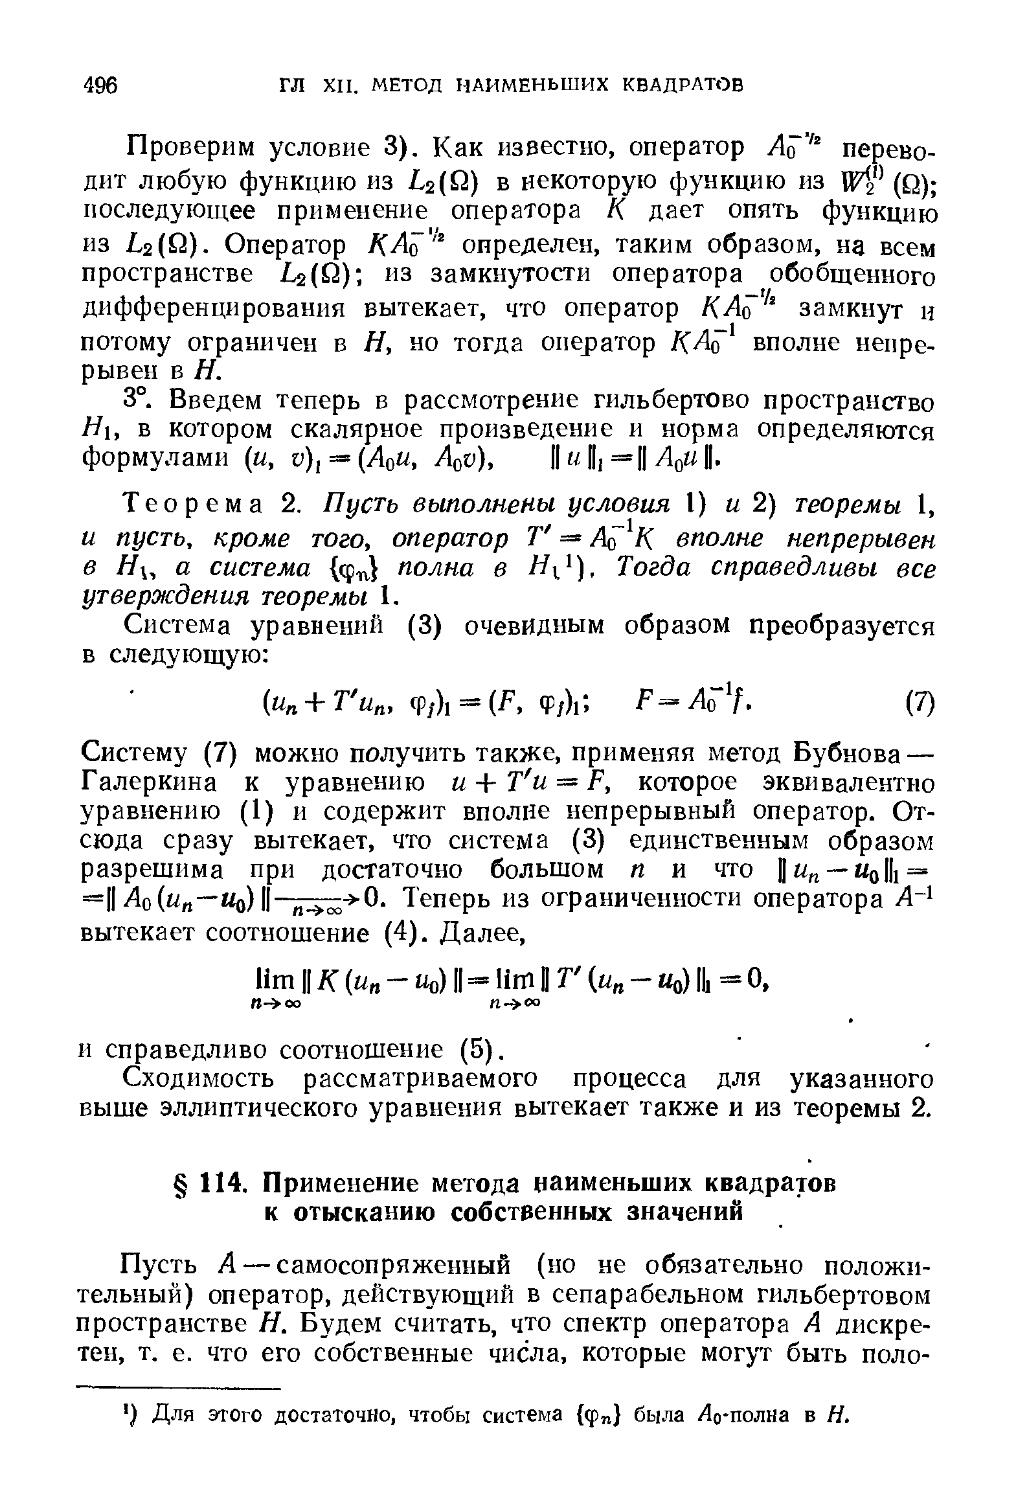 § 114. Применение метода наименьших квадратов к отысканию собственных значений